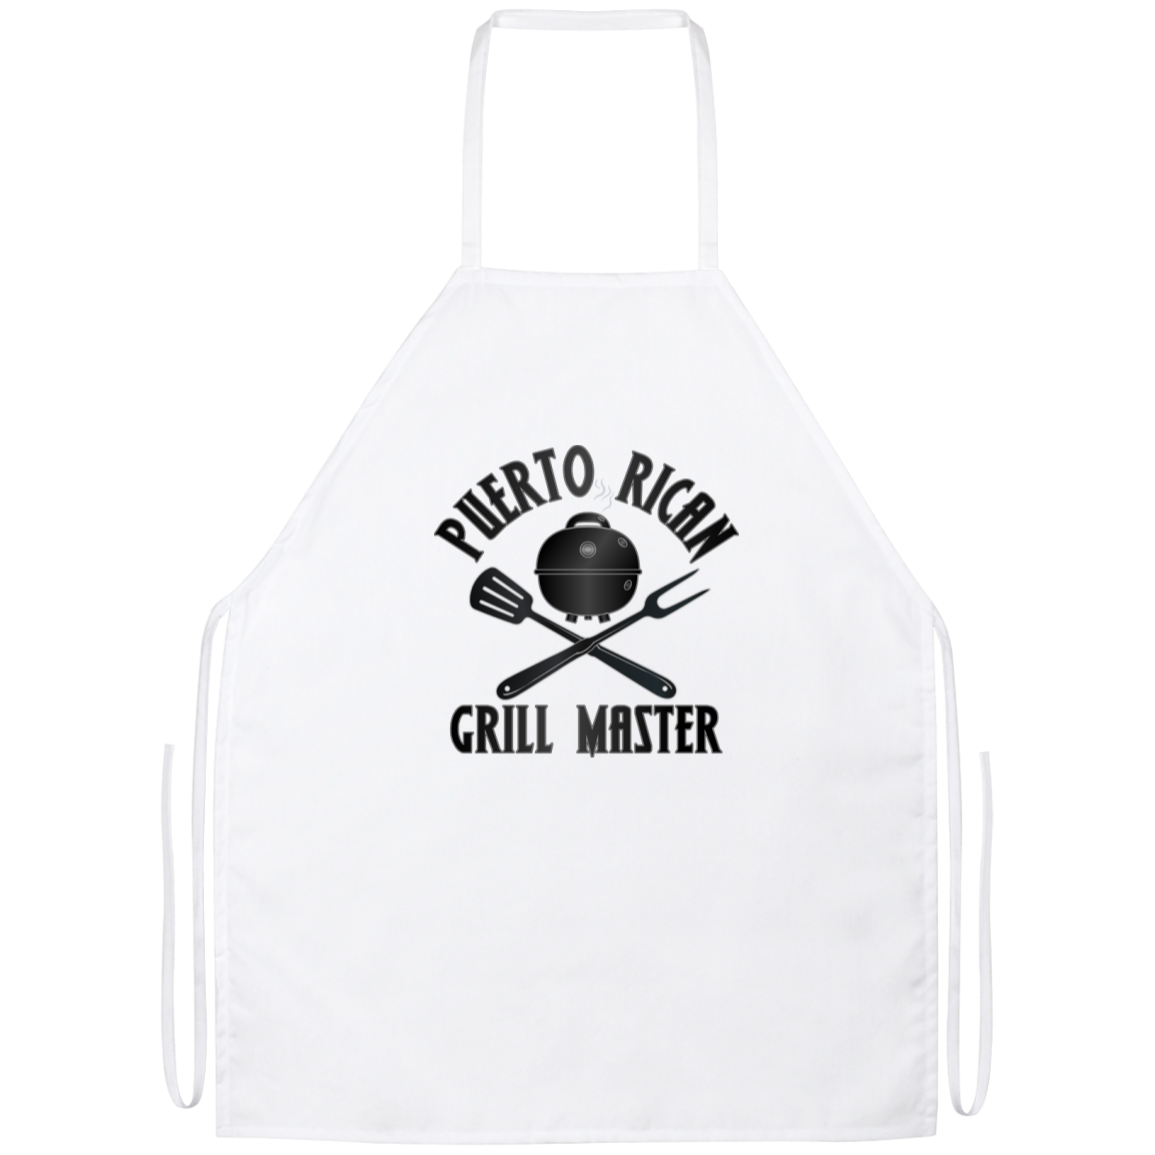 Puerto Rican Grill Master Apron - Puerto Rican Pride